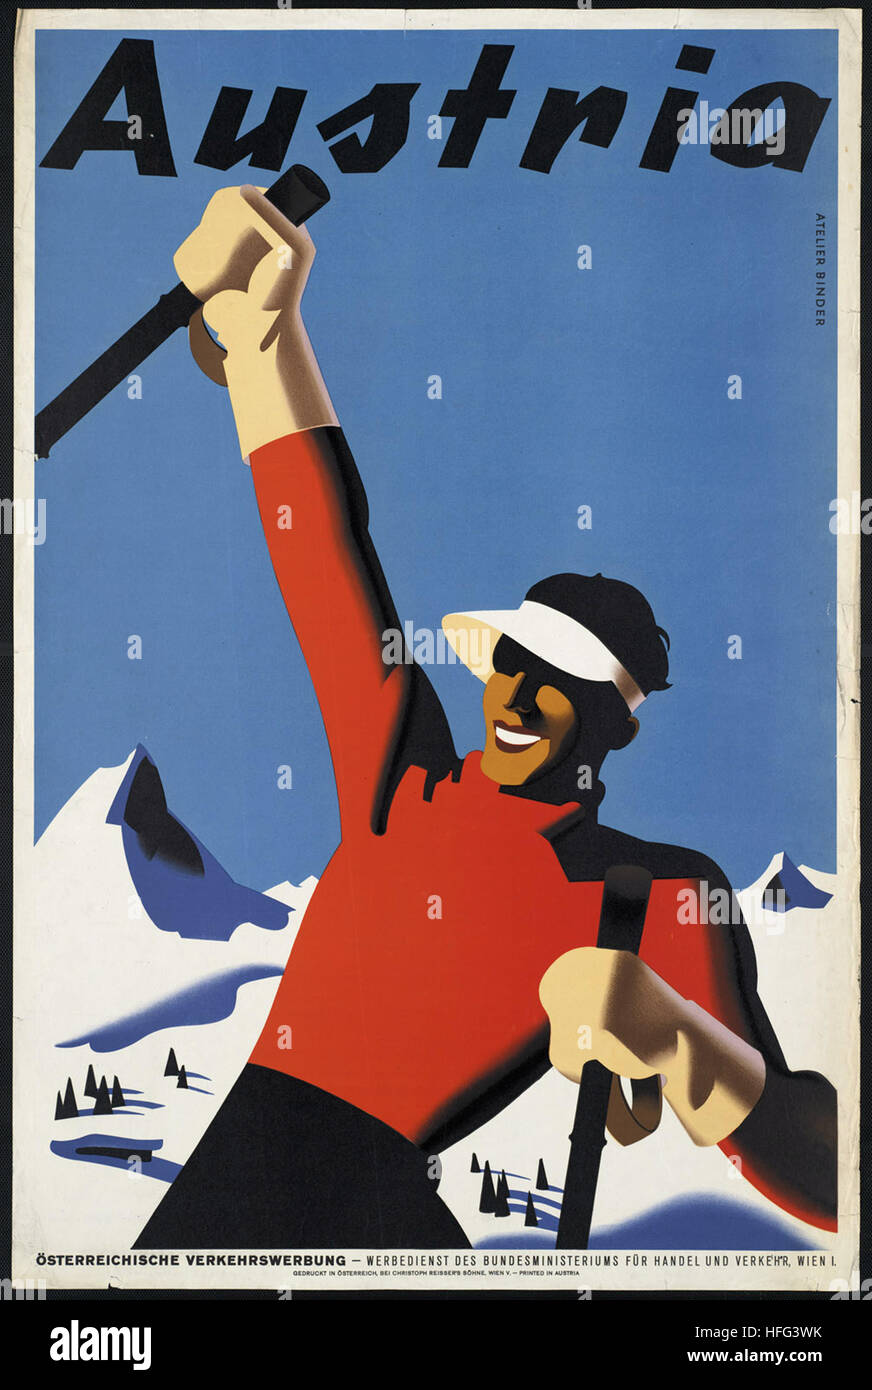 Vintage Travel Poster - Austria Stock Photo